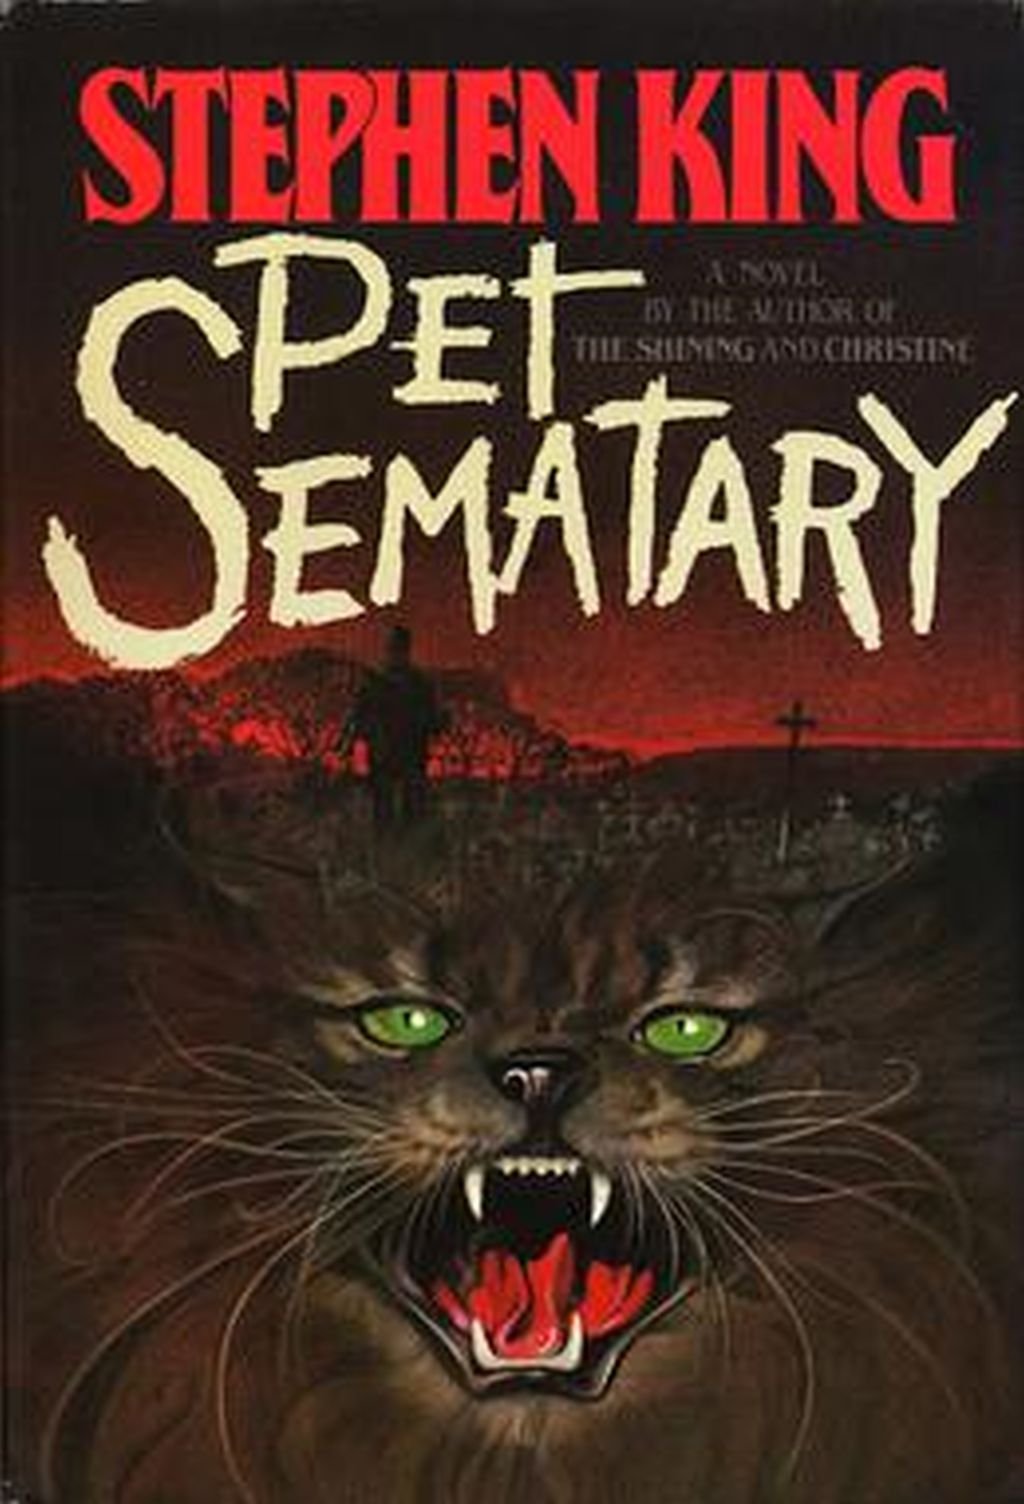 Original book cover for Pet Sematary